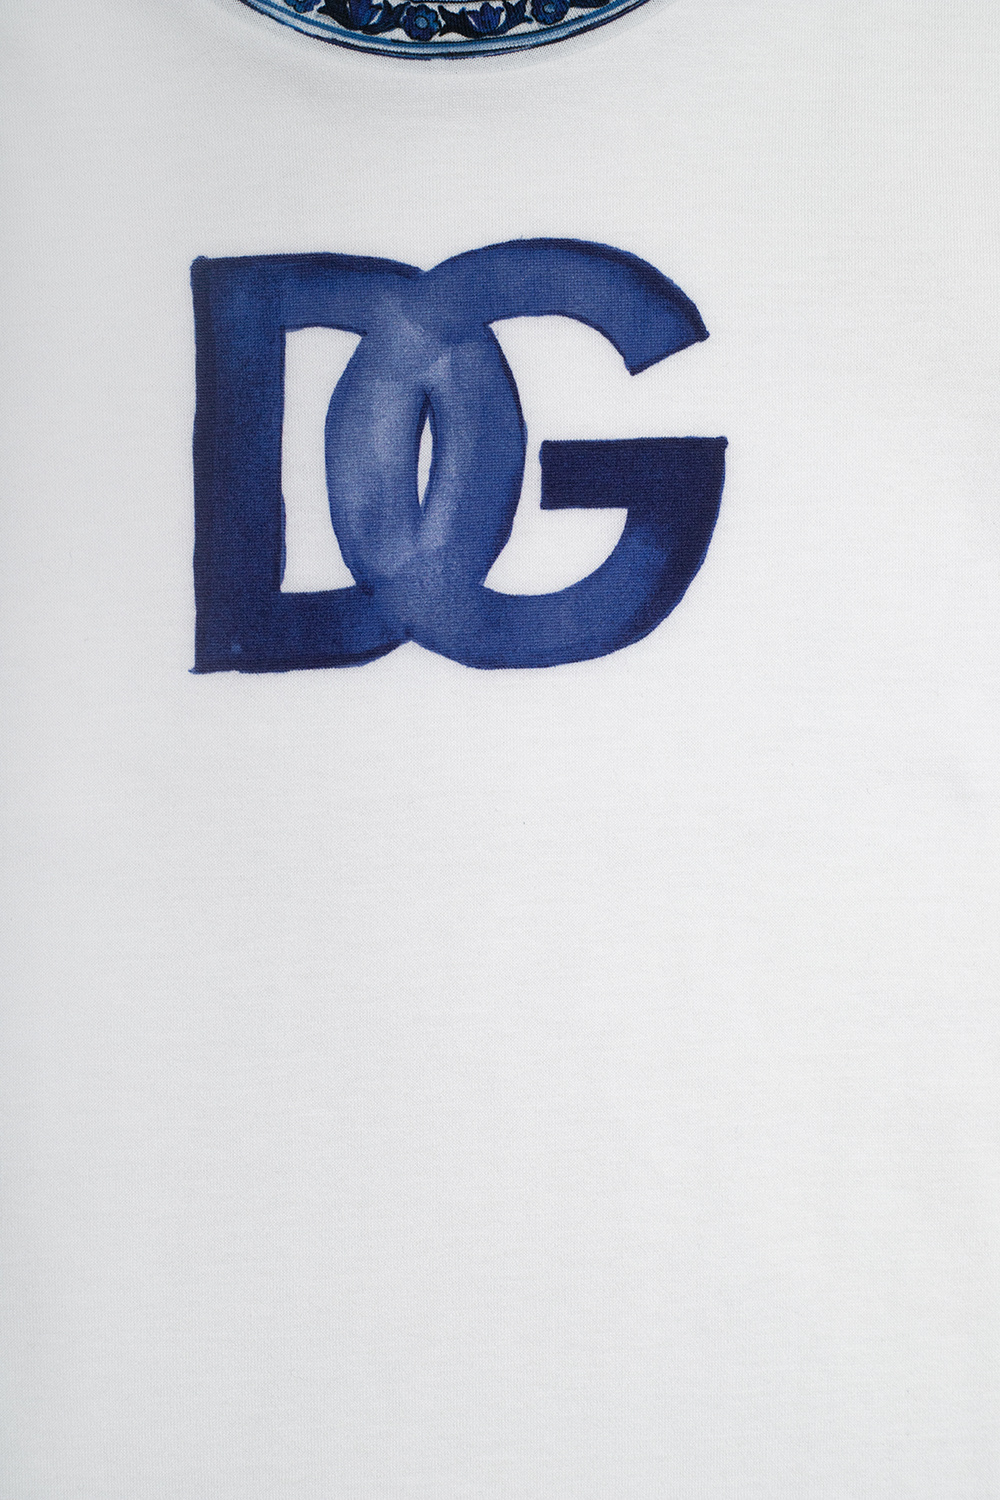 Dolce & Gabbana Kids Dolce & Gabbana Black T-shirt For Girl With Diva Writing